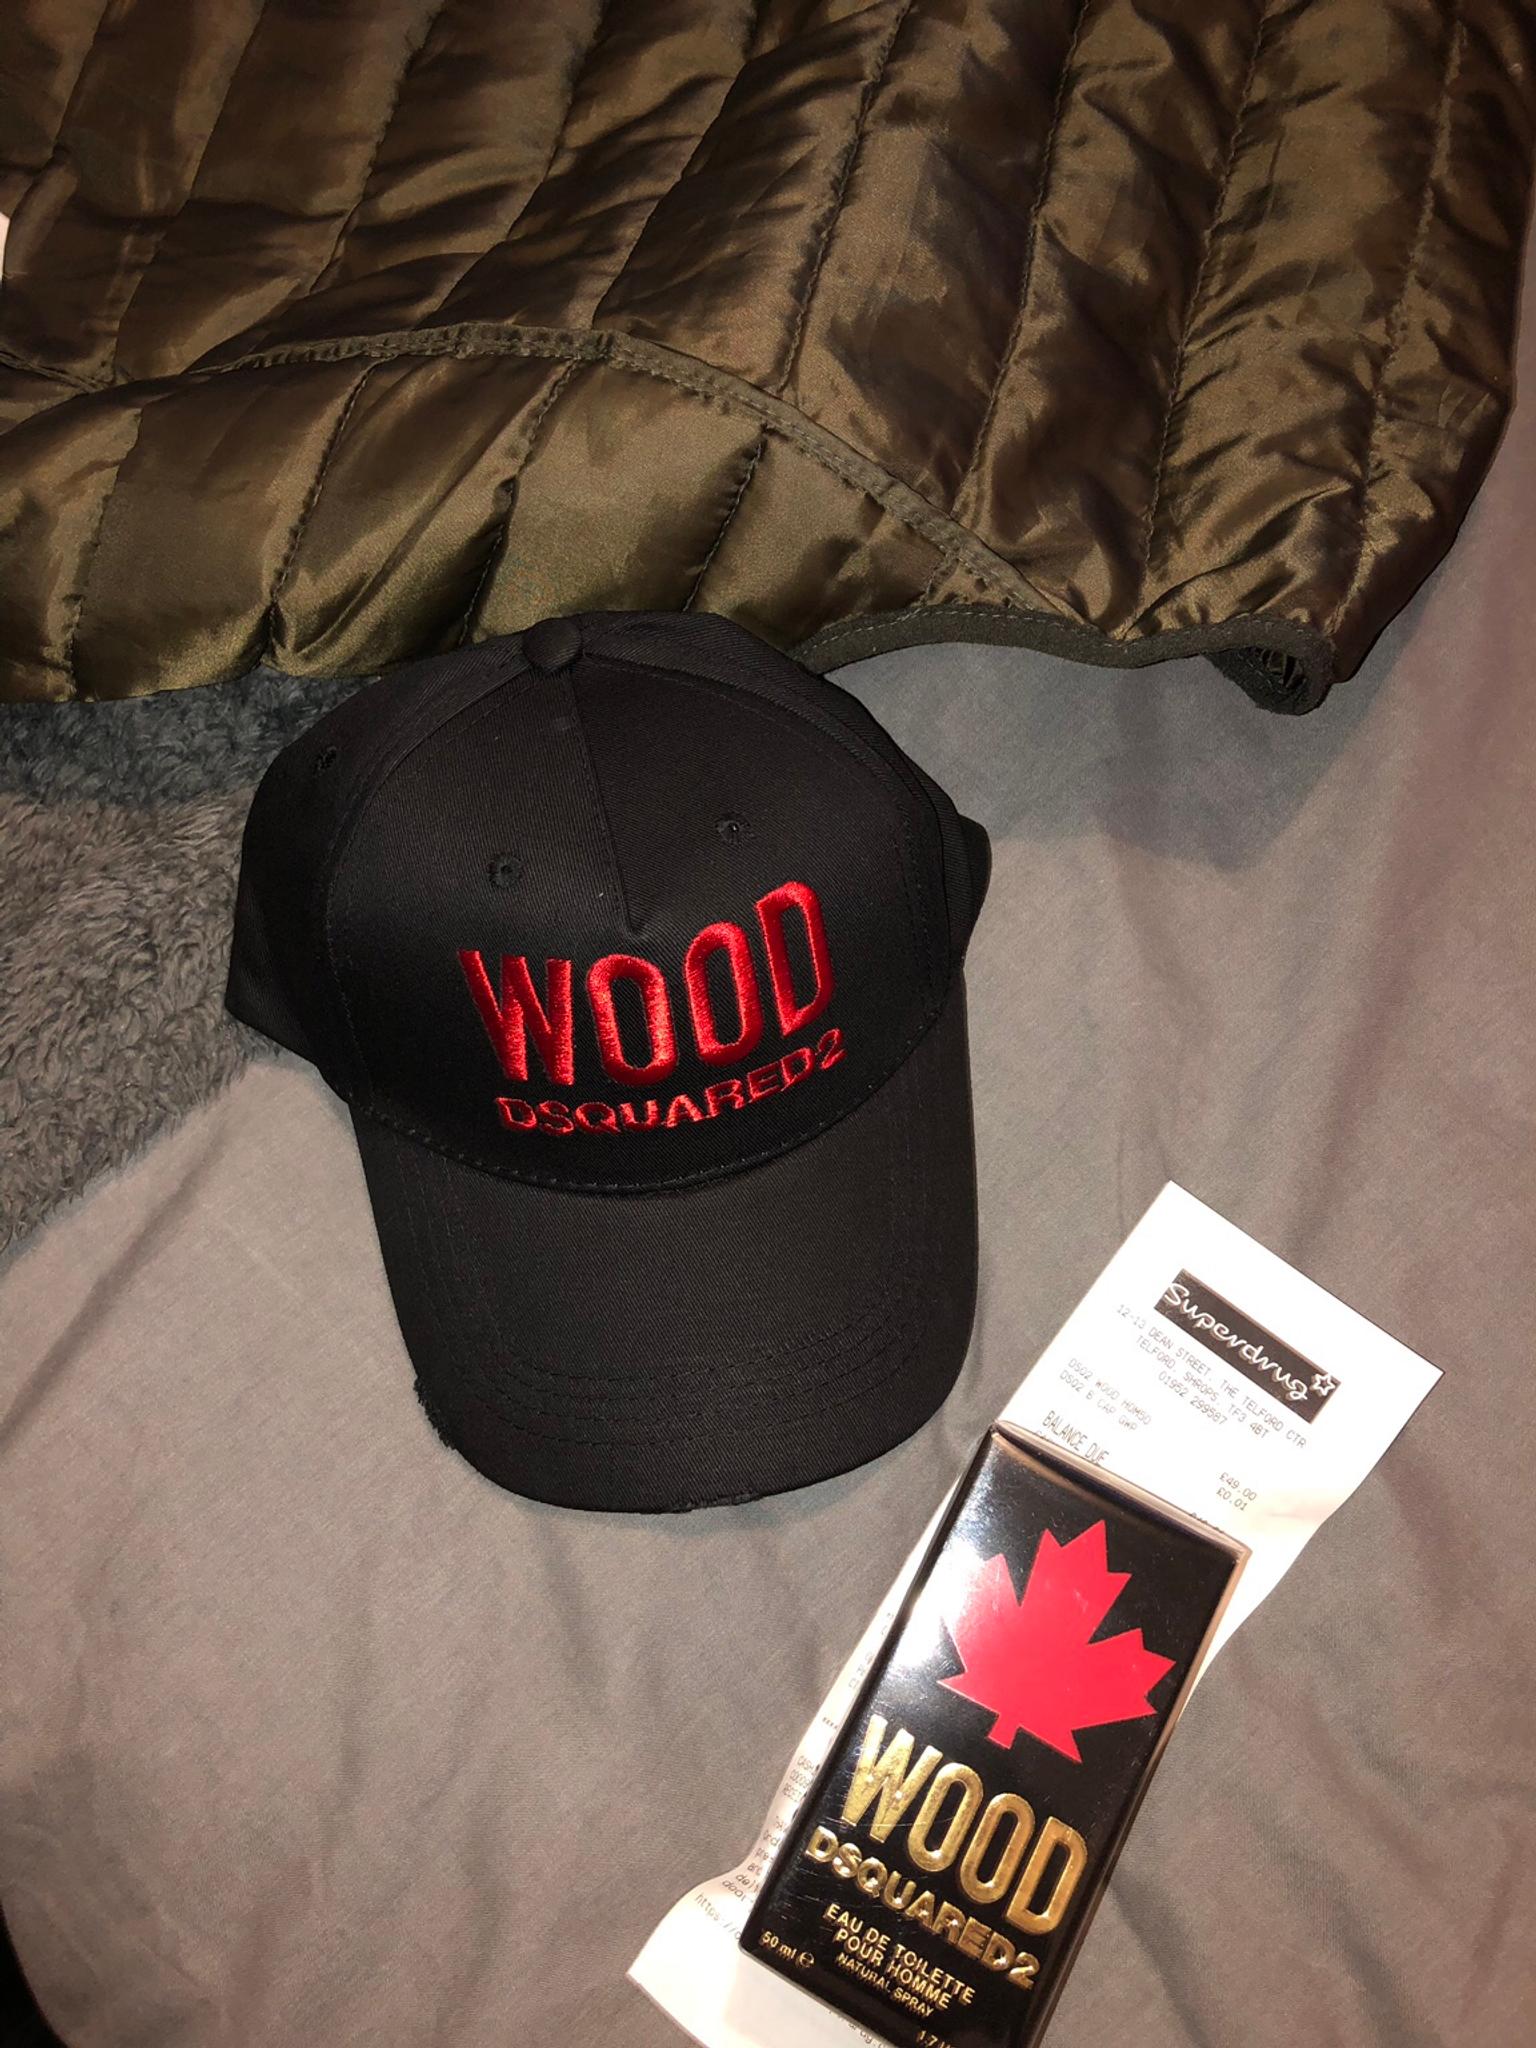 dsquared cap wood